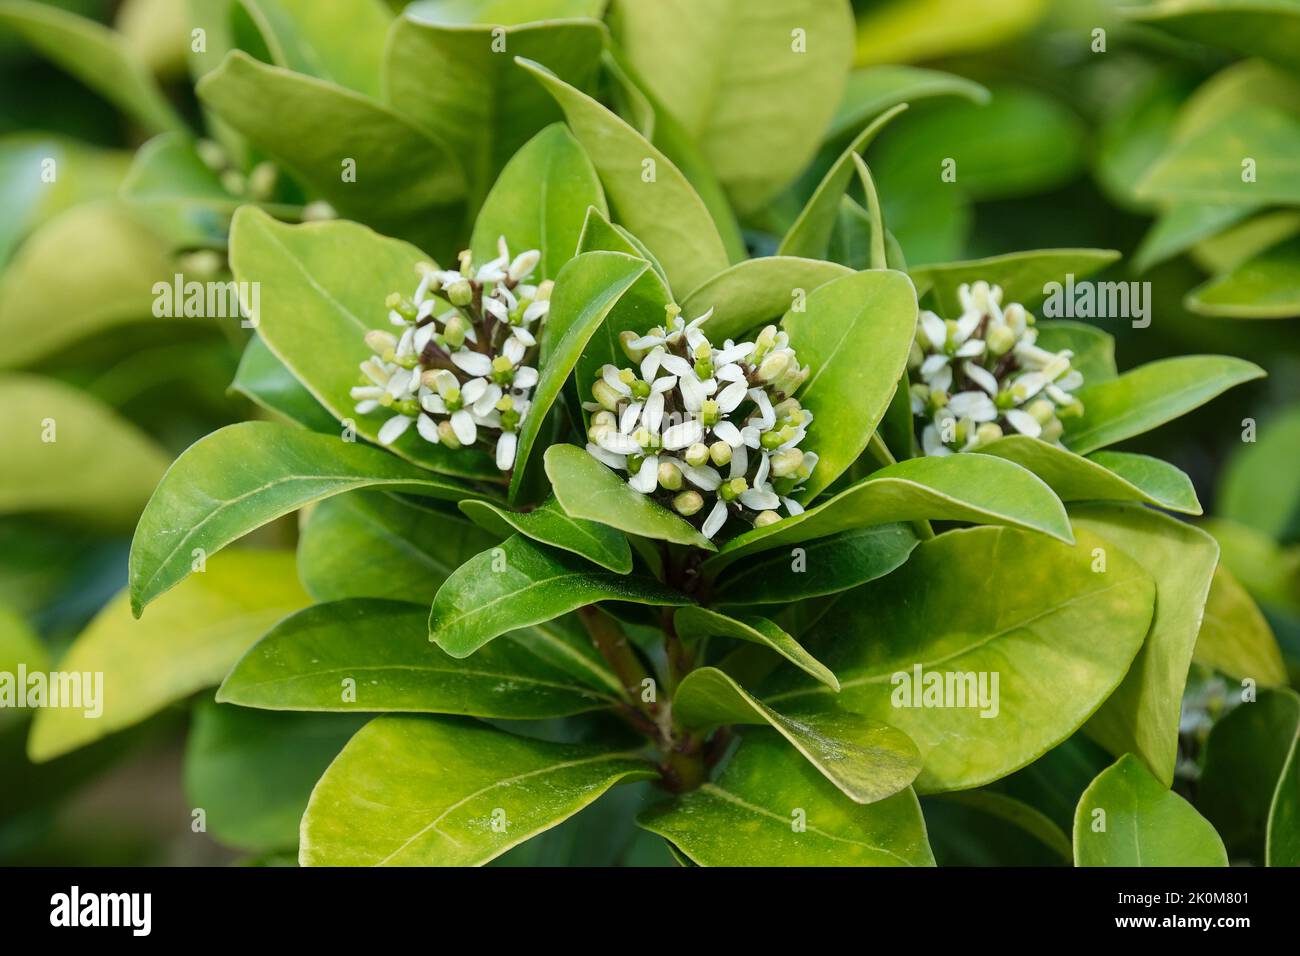 Skimmia japonica subespecie pumila. Panículas terminales de pequeñas flores blancas / amarillentas en primavera Foto de stock